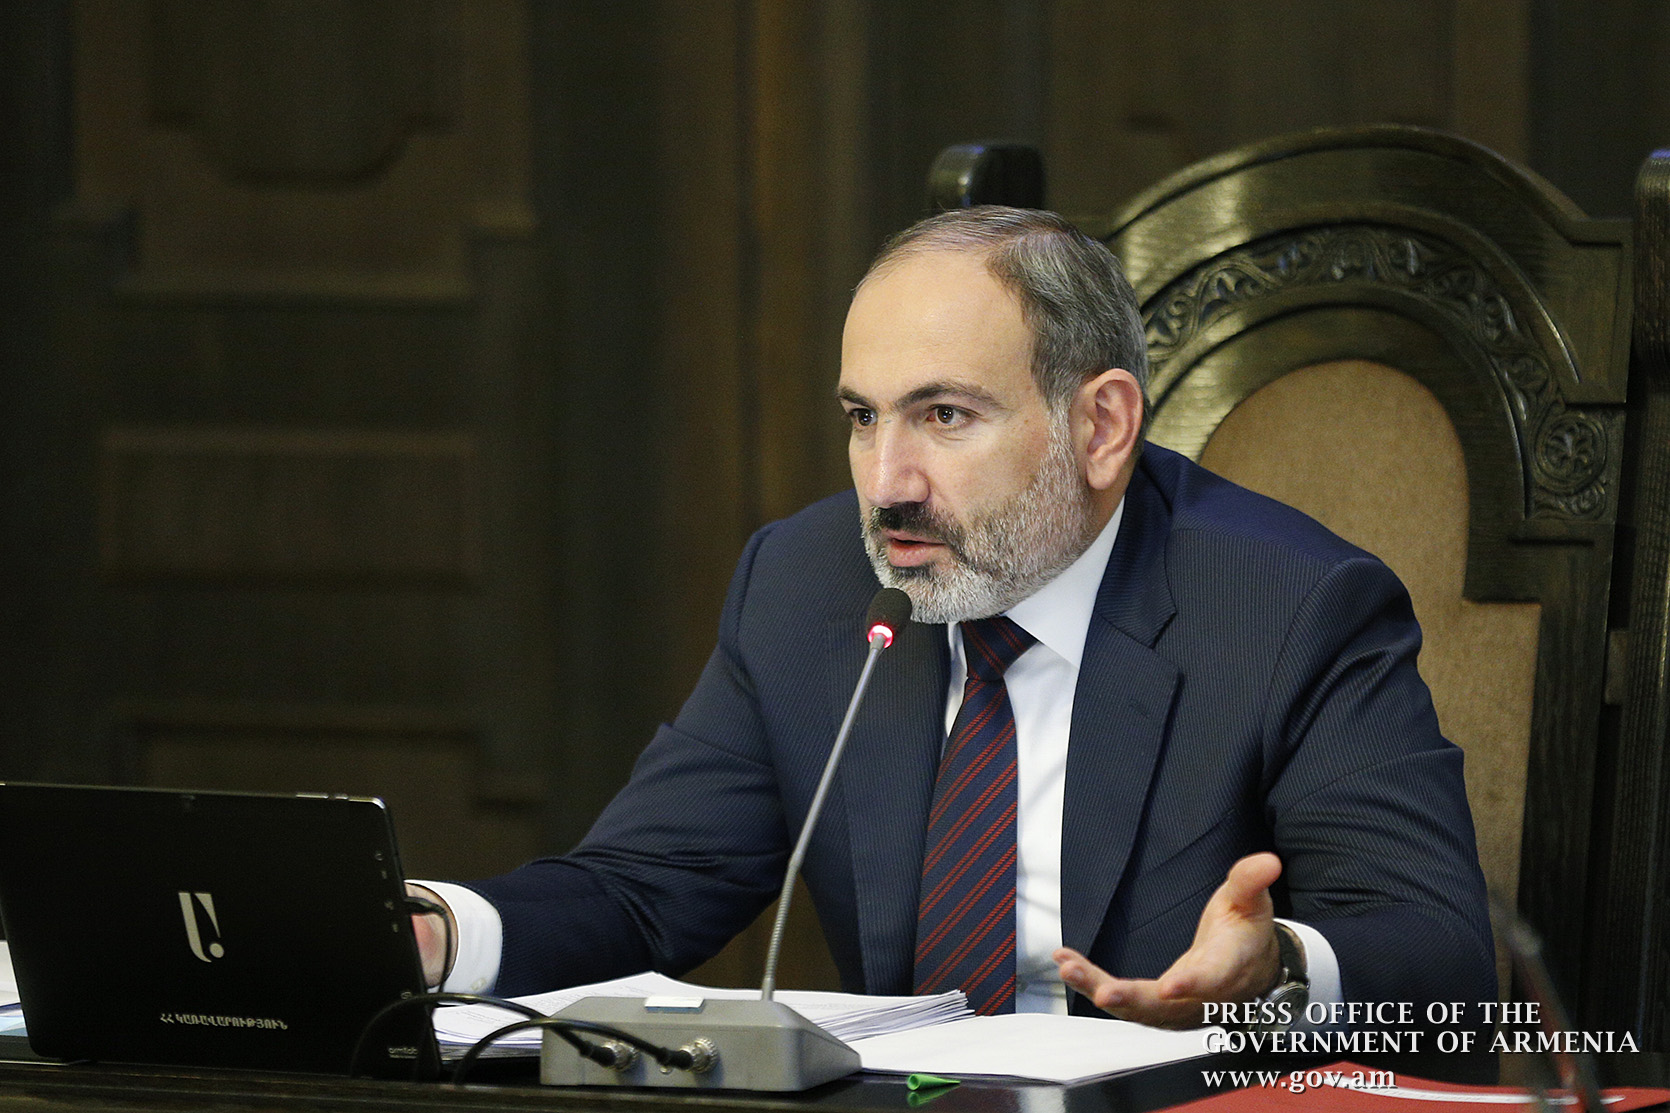 Для Армении 2020 год должен стать годом решения стратегических задач - Пашинян